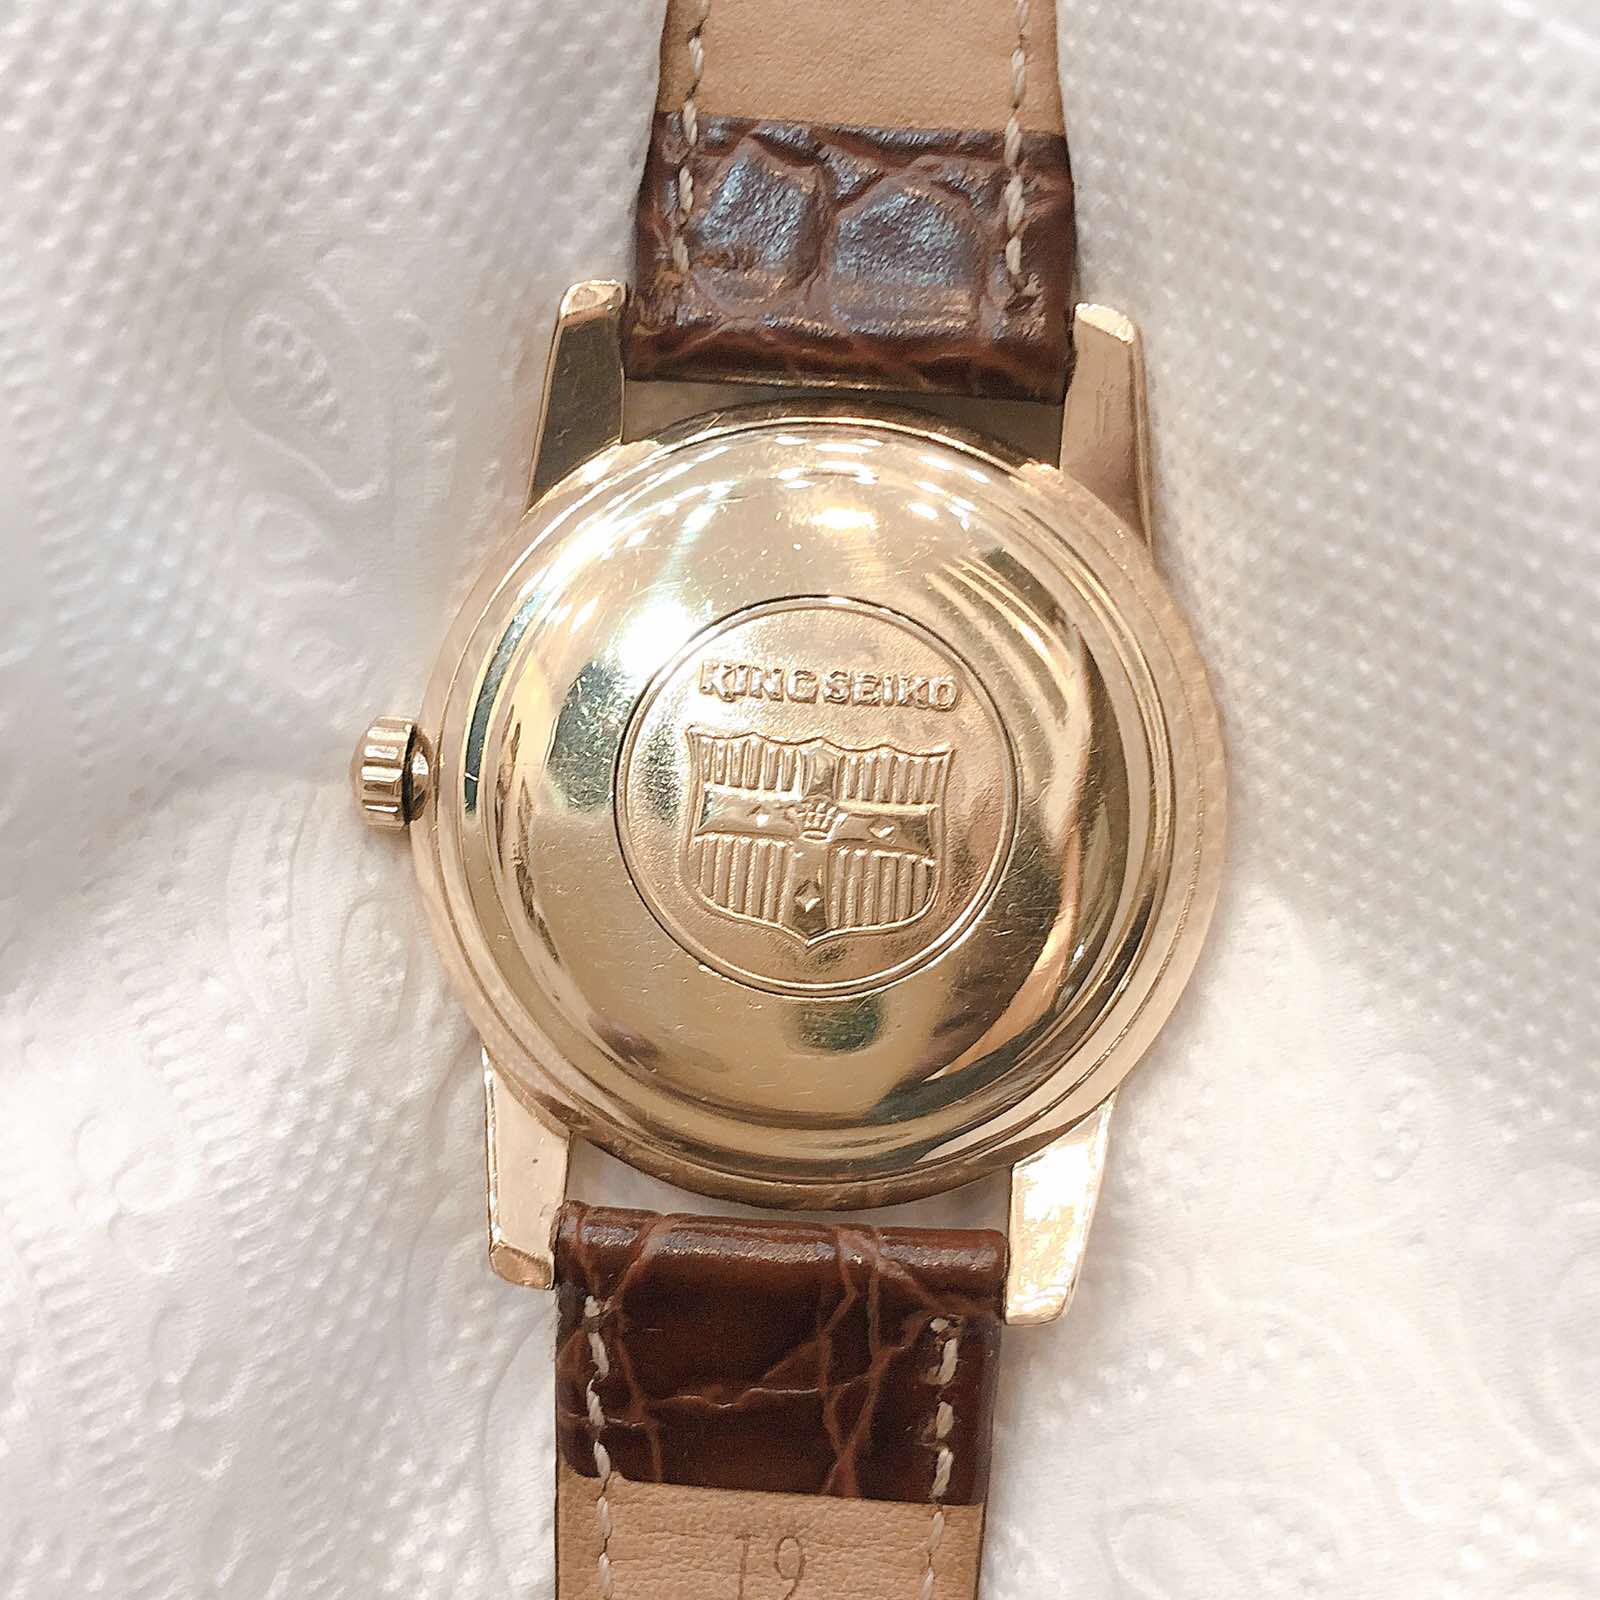 Đồng hồ cổ Seiko King lên dây bọc vàng 14k goldfilled chính hãng nhật bản